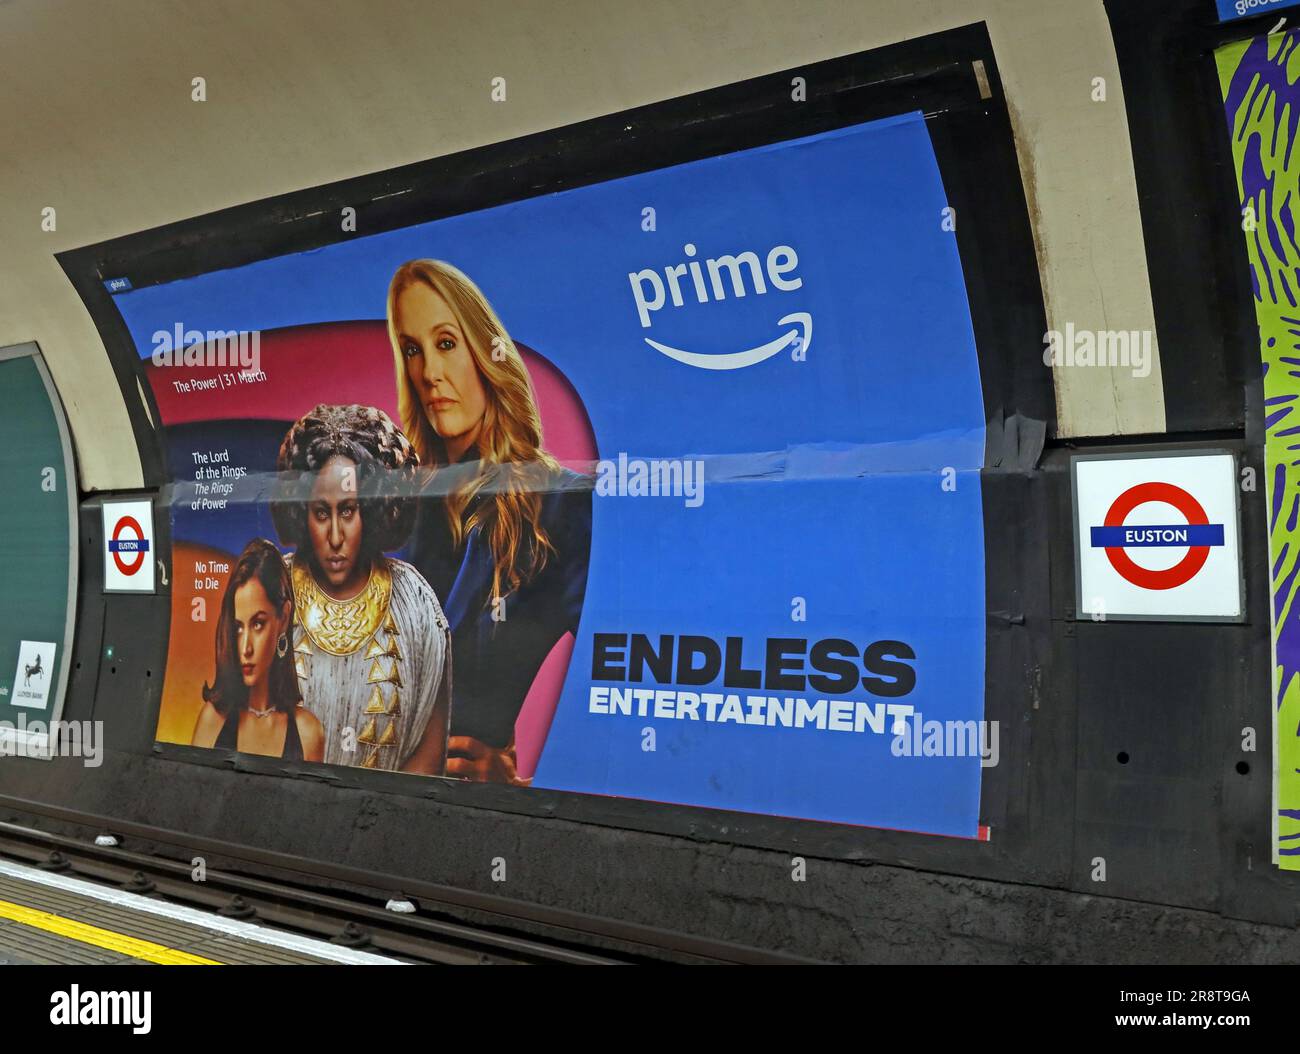 Pubblicità Amazon prime Endless Entertainment sulla metropolitana di Londra, alla stazione di Euston.- The Power, No Time to Die, Lord of the Ring Foto Stock